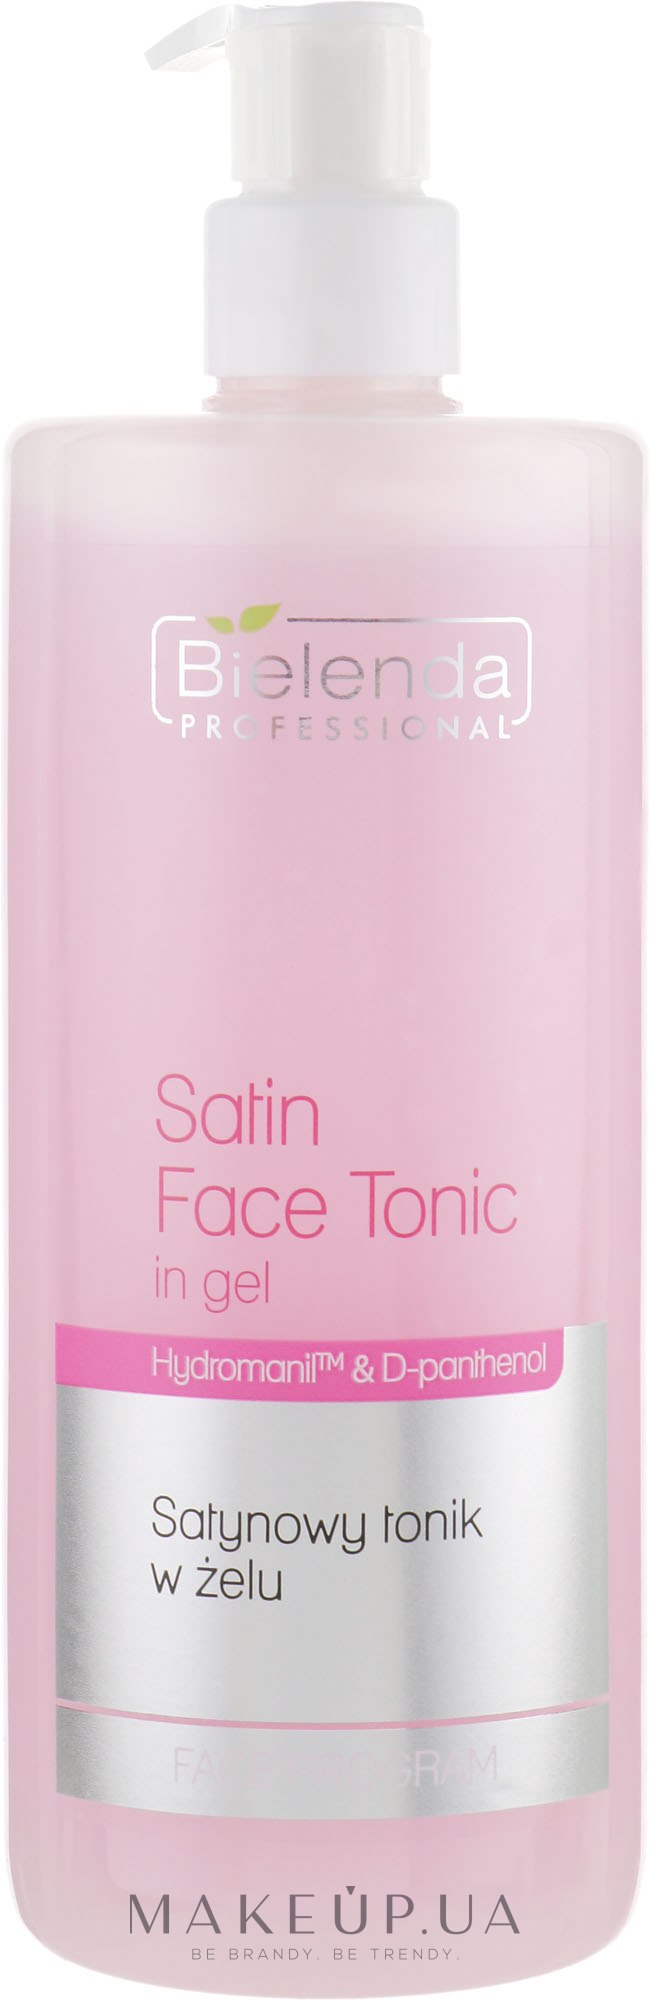 Сатиновый гель-тоник для лица - Bielenda Professional Program Face Skin Satin Tonik — фото 500ml